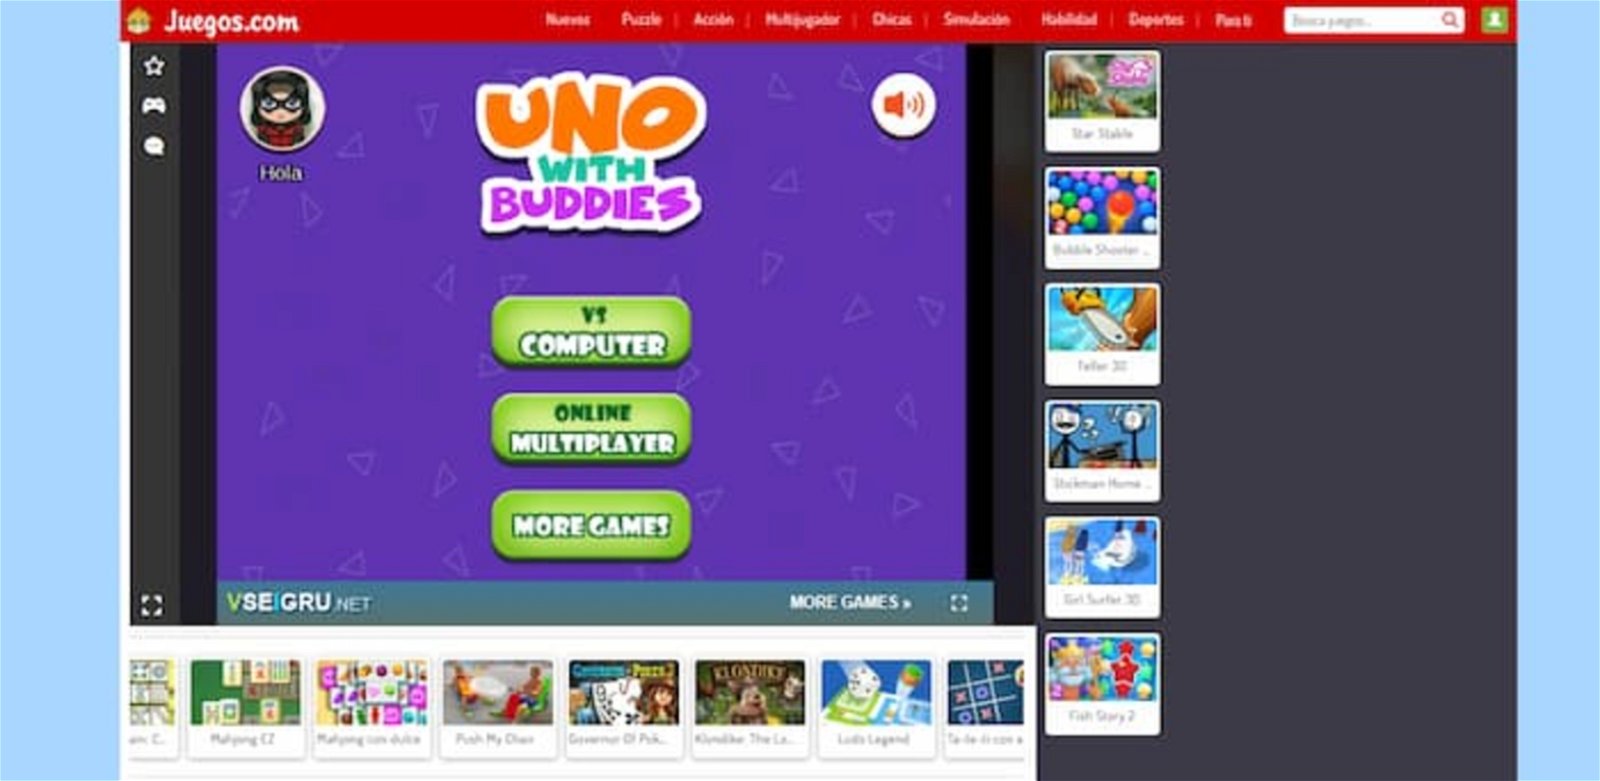 Las mejores 9 webs para jugar al Uno online con amigos